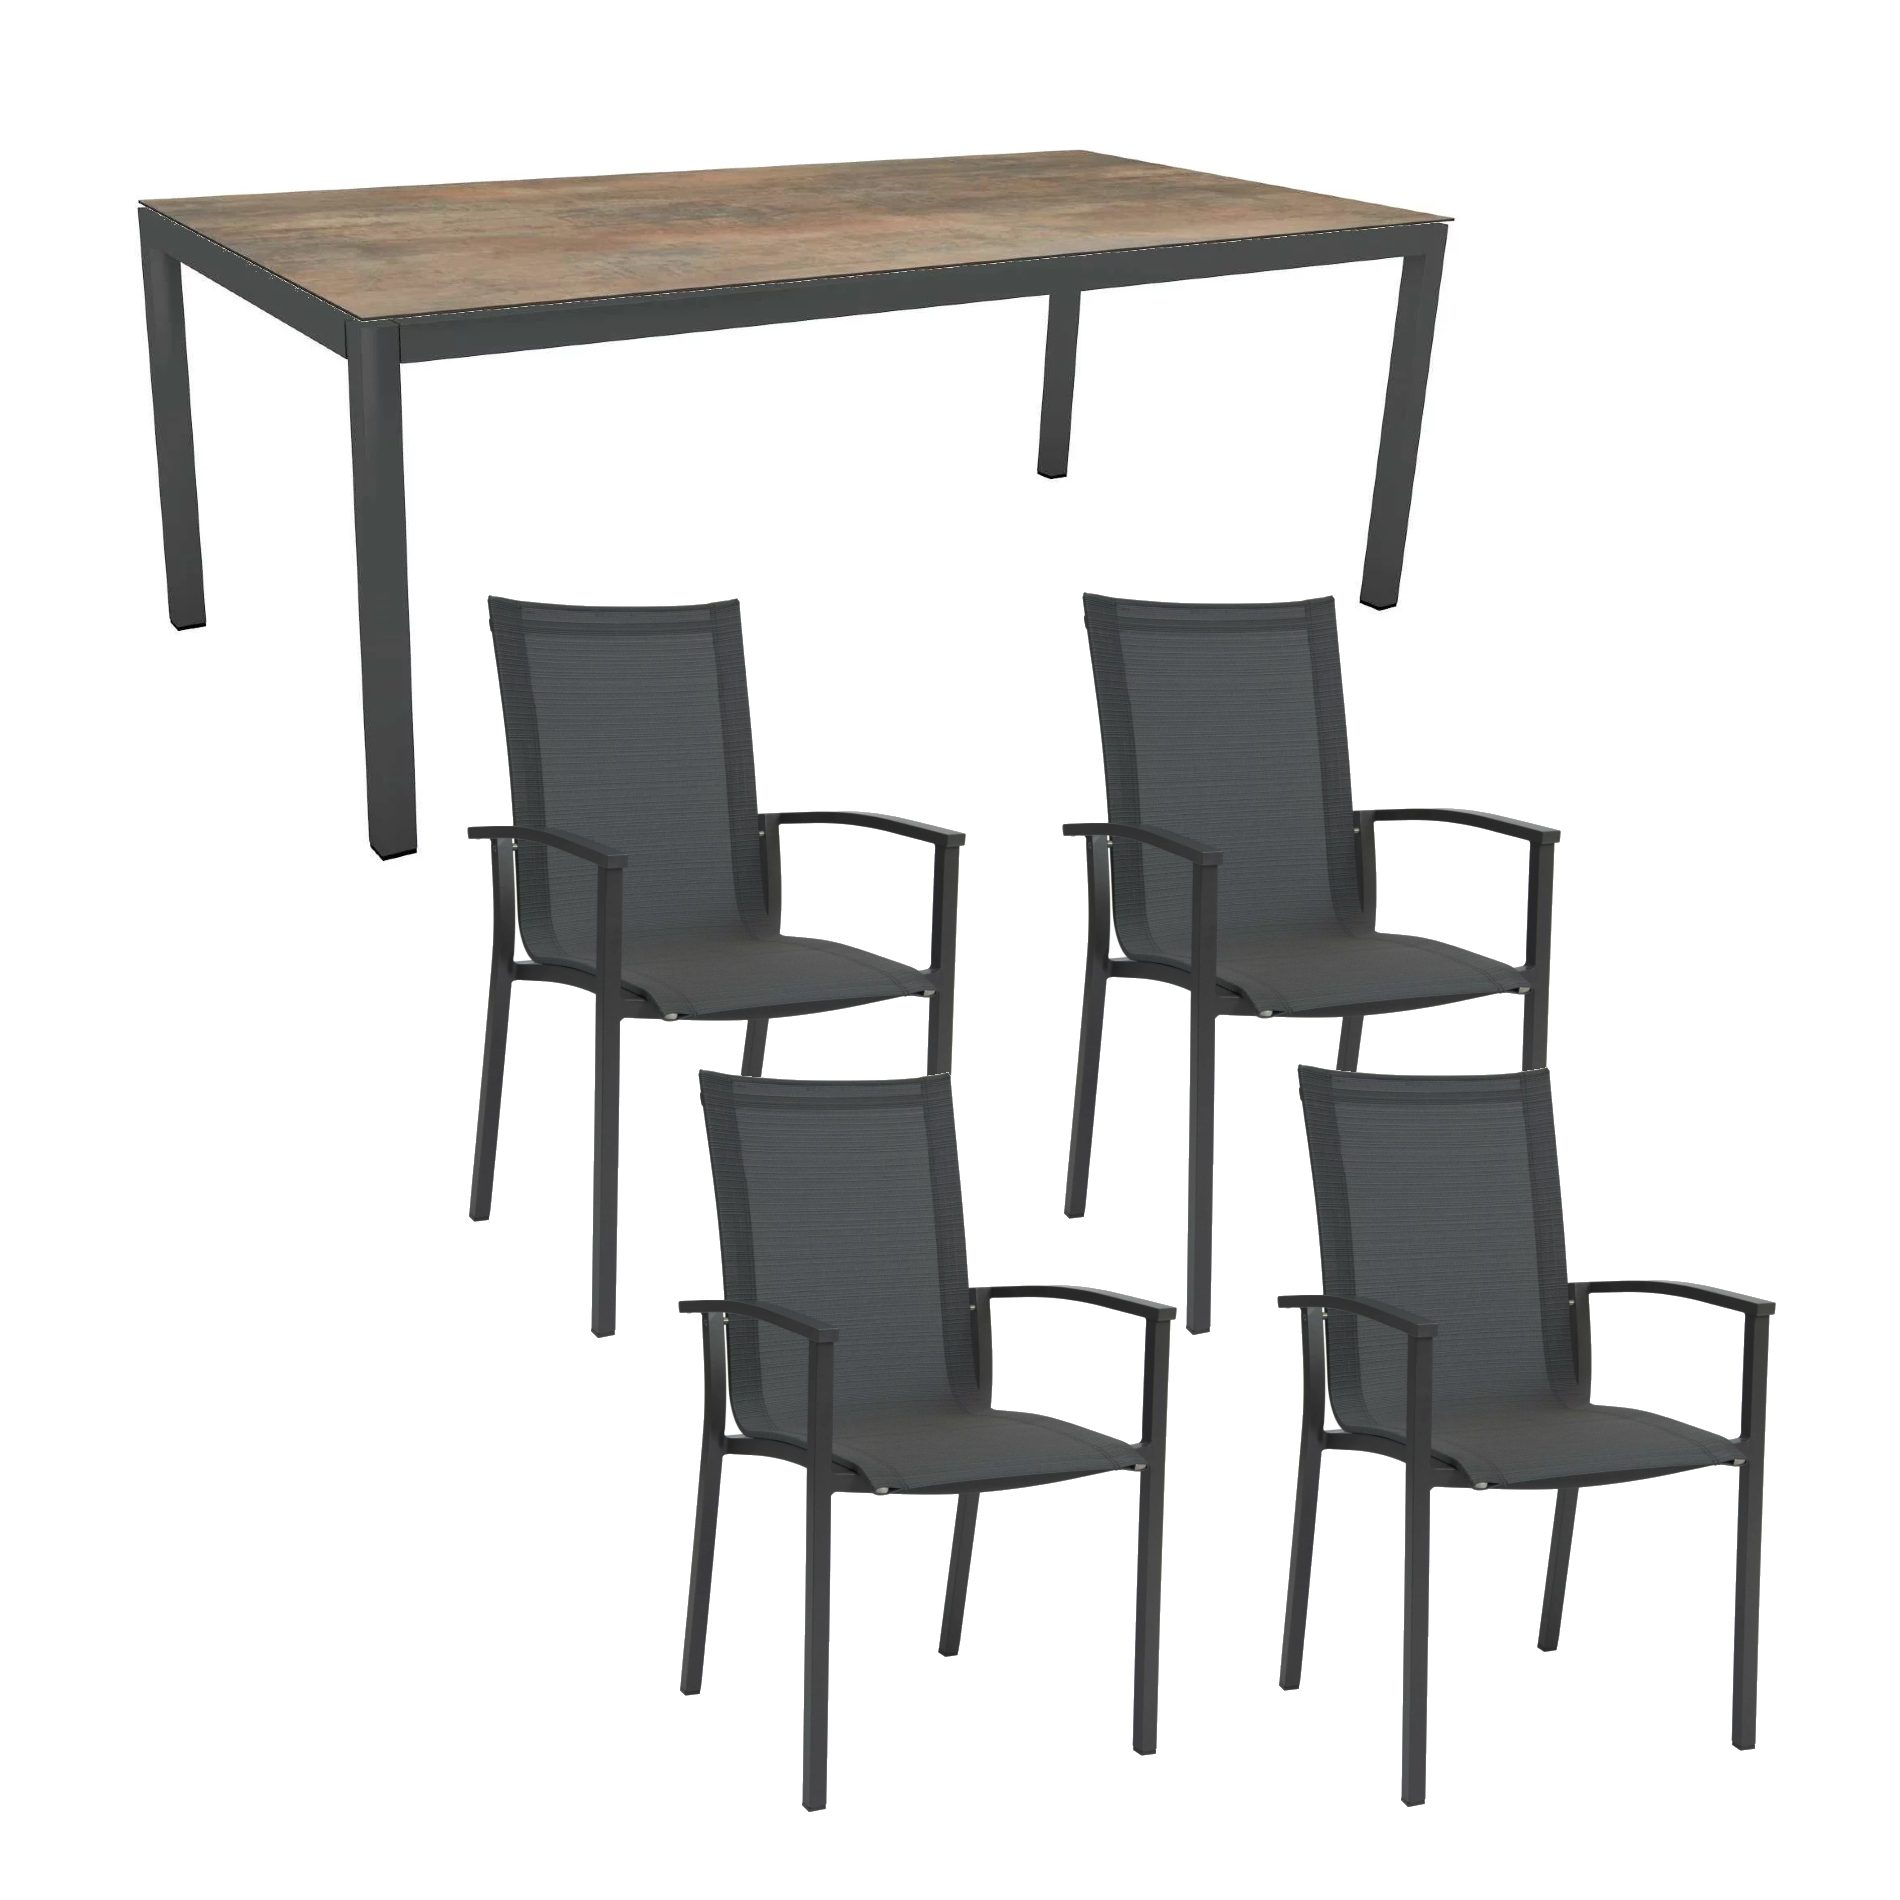 Stern Gartenmöbel-Set "Evoee", Gestelle Aluminium anthrazit, Sitzfläche Textilgewebe karbon, Tischplatte HPL Ferro